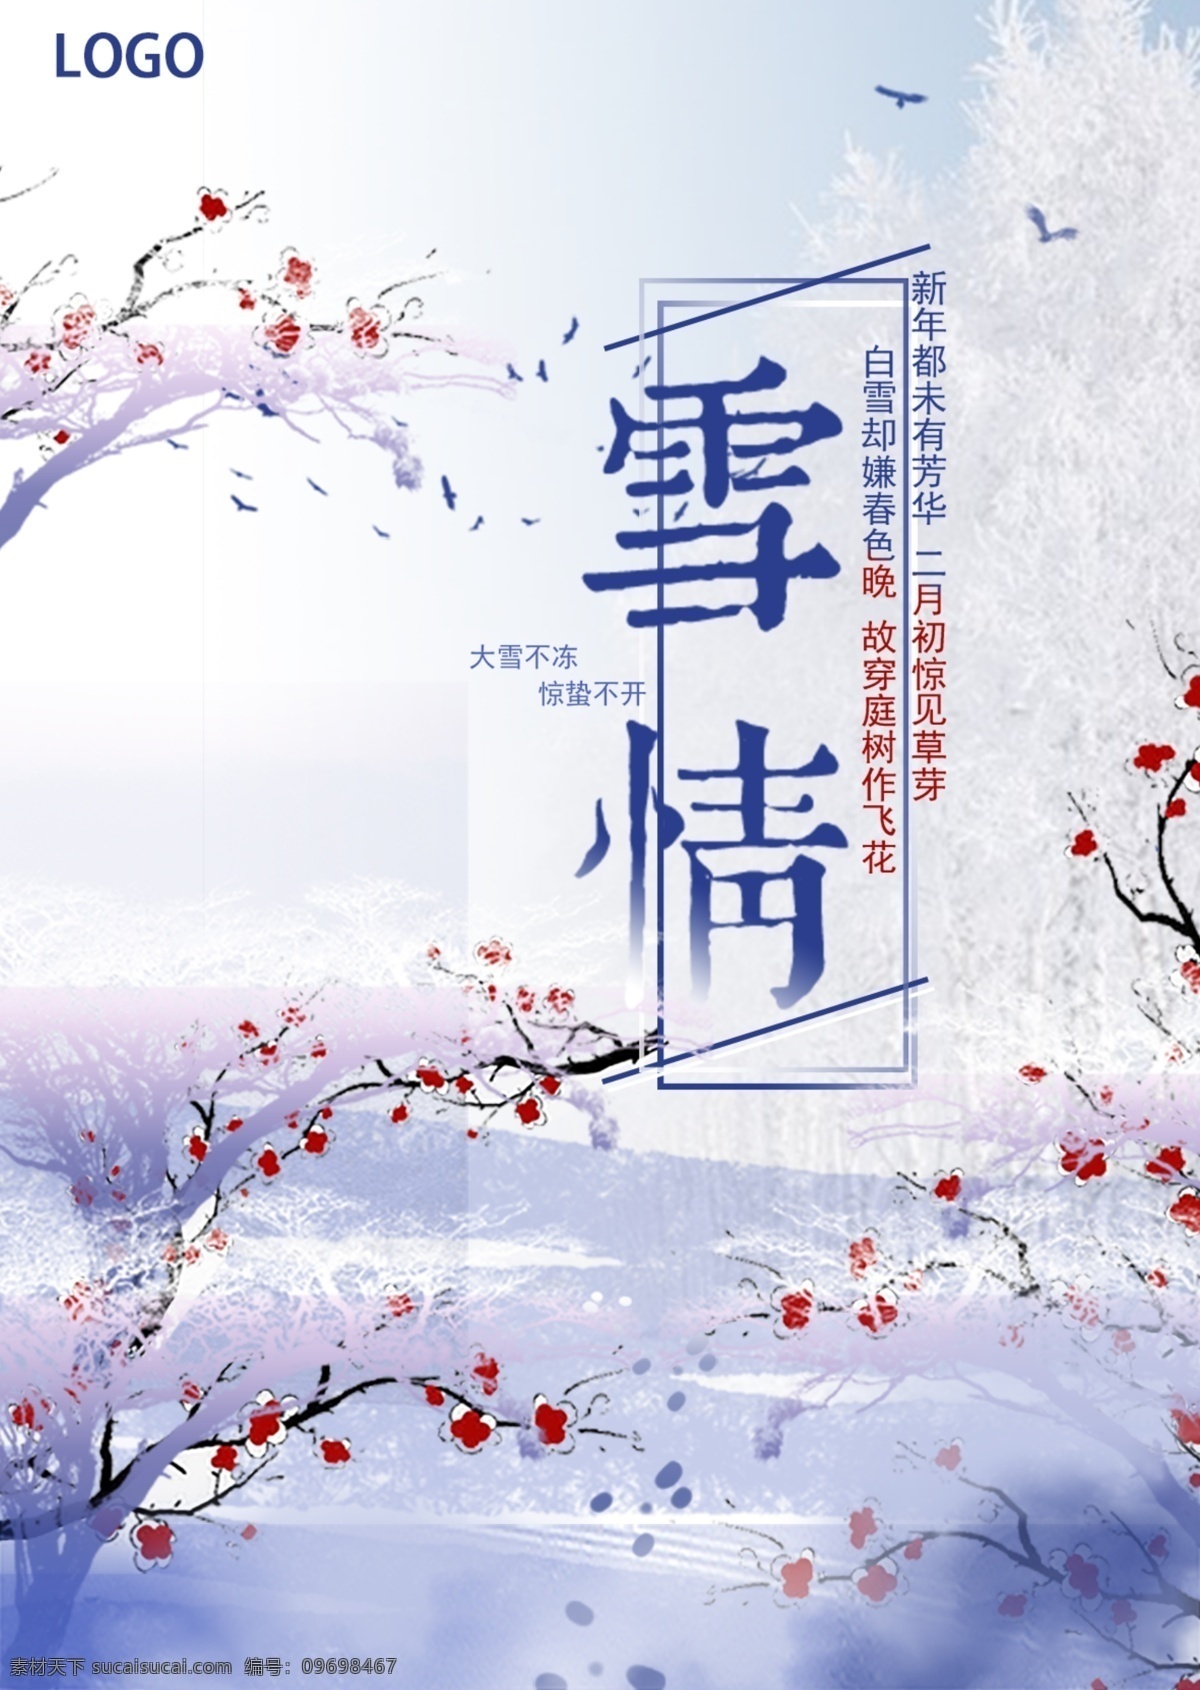 蓝色 简约 雪情 十二月 2018 你好 宣传海报 12月 古风 清新 梅花 大雪 唯美 雪景 海报 宣传